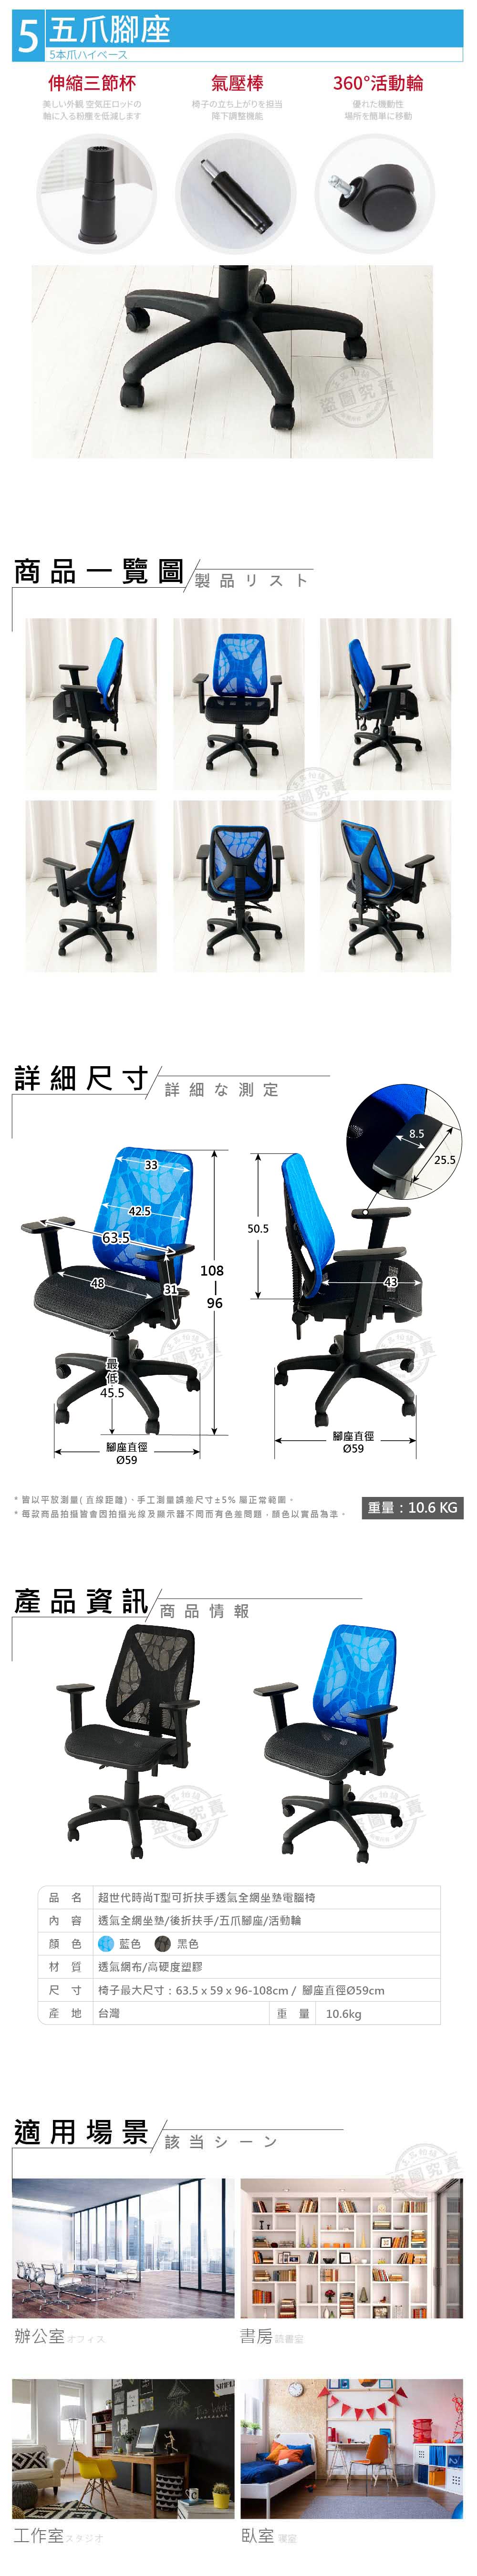 ADS 超世代時尚酷炫雲彩T型可折扶手透氣全網坐墊電腦椅/辦